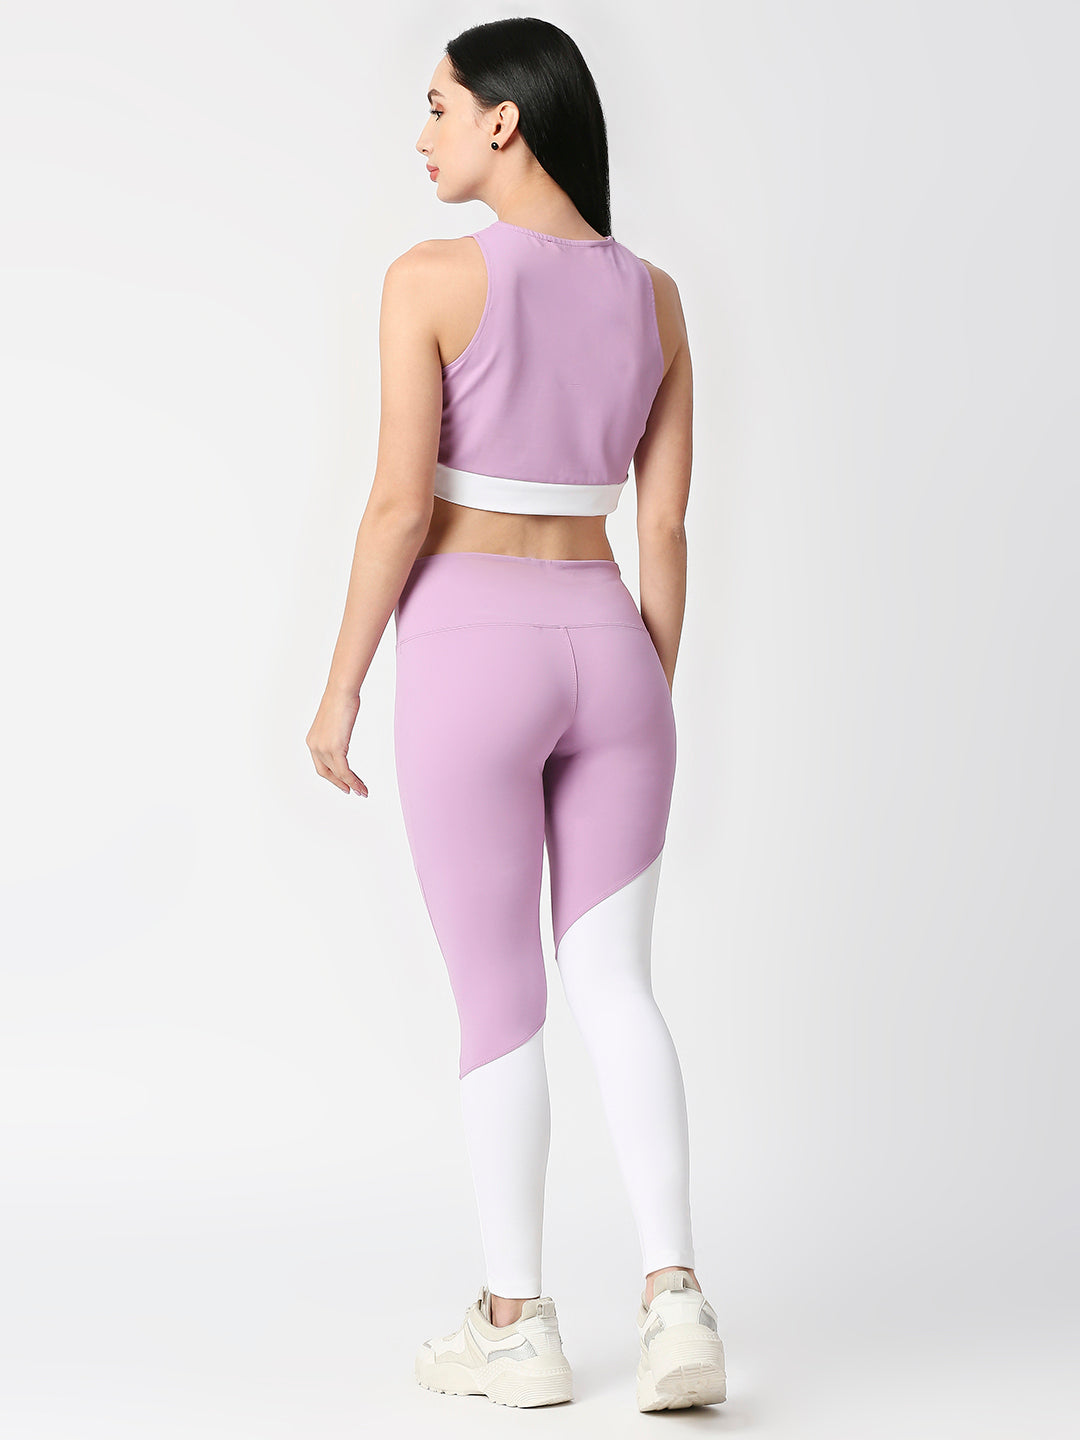 Shop Blamblack Women's Light Pink Color V-Neck GYM Wear Co-Ord's